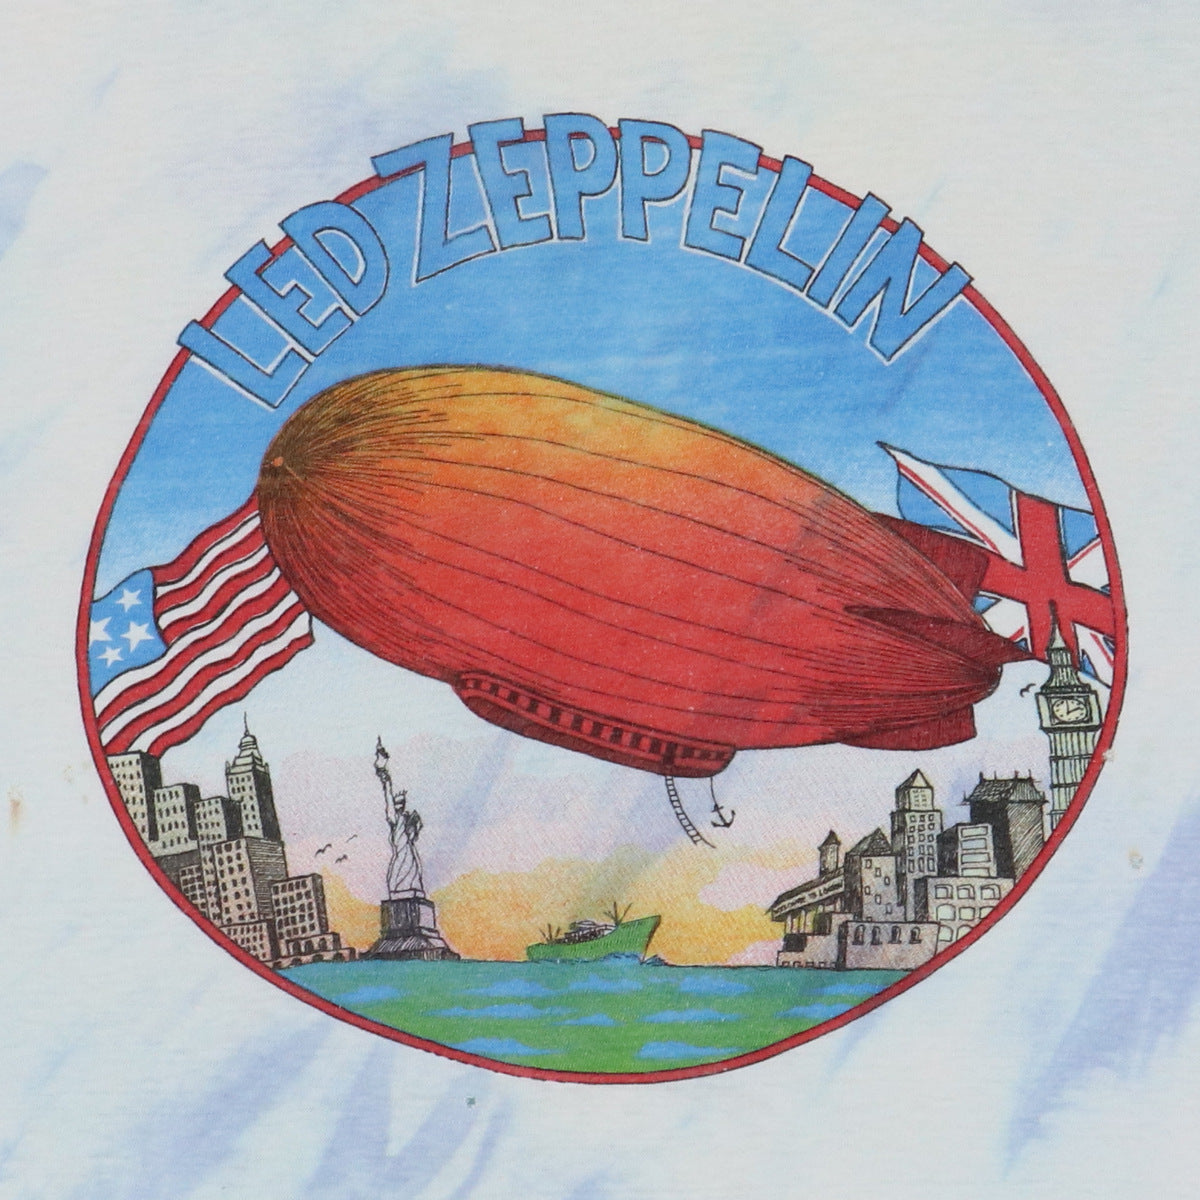 1970s Led Zeppelin Tie Dye Shirt